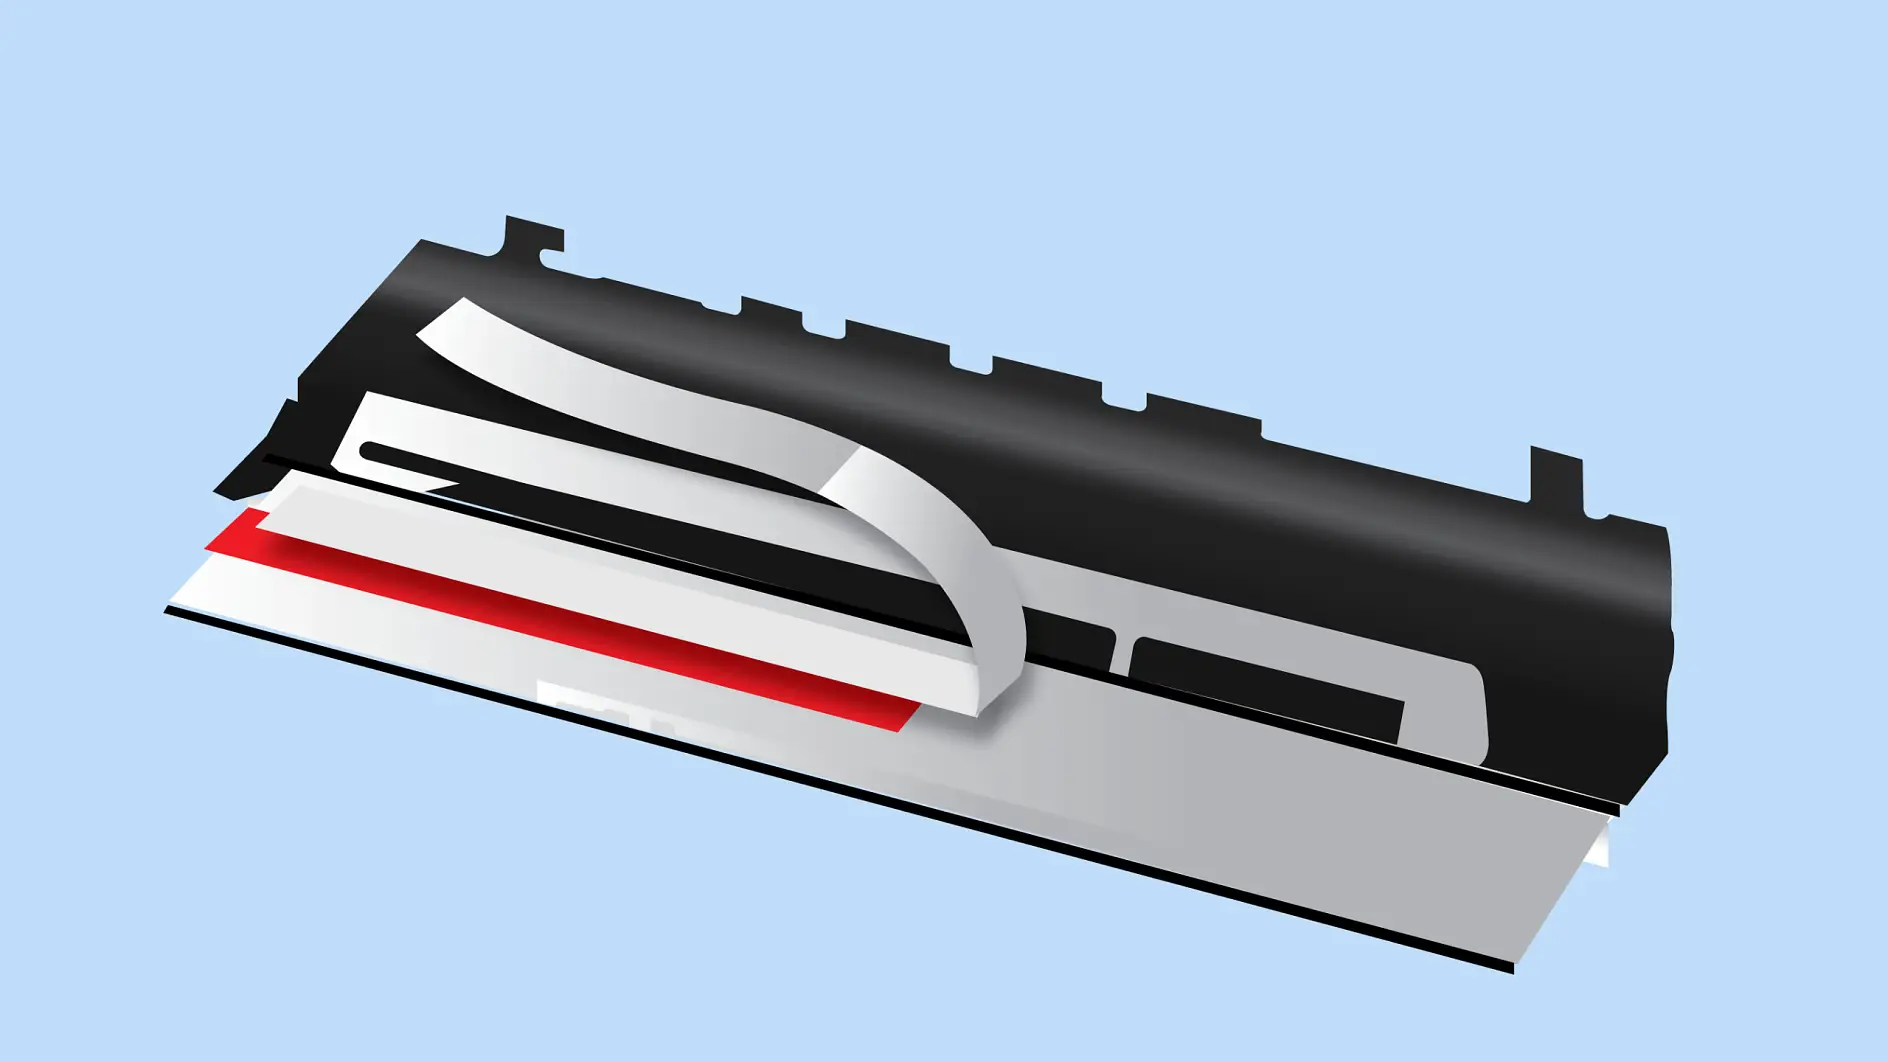 Ohebný plošný spoj je připevněn pomocí oboustranné pásky.